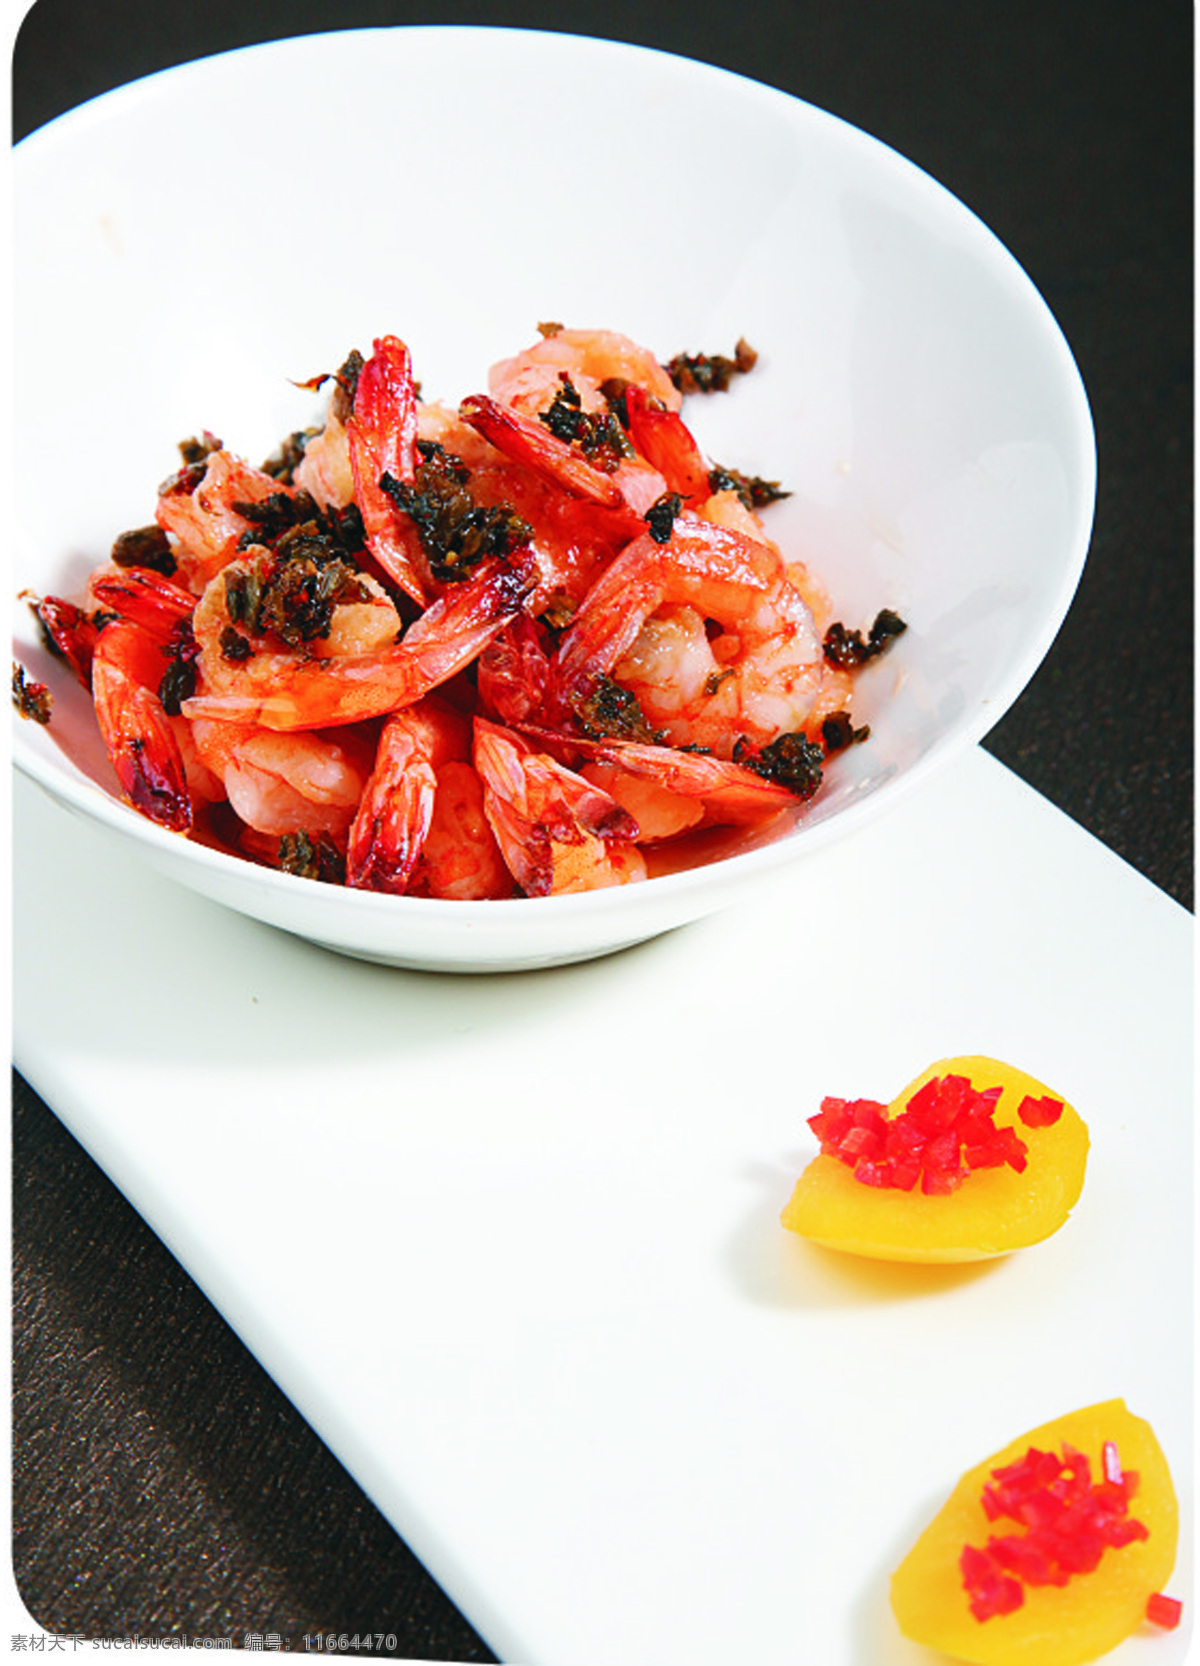 梅菜虾干 美食 炒菜 中国菜 鲜虾 餐饮美食 传统美食